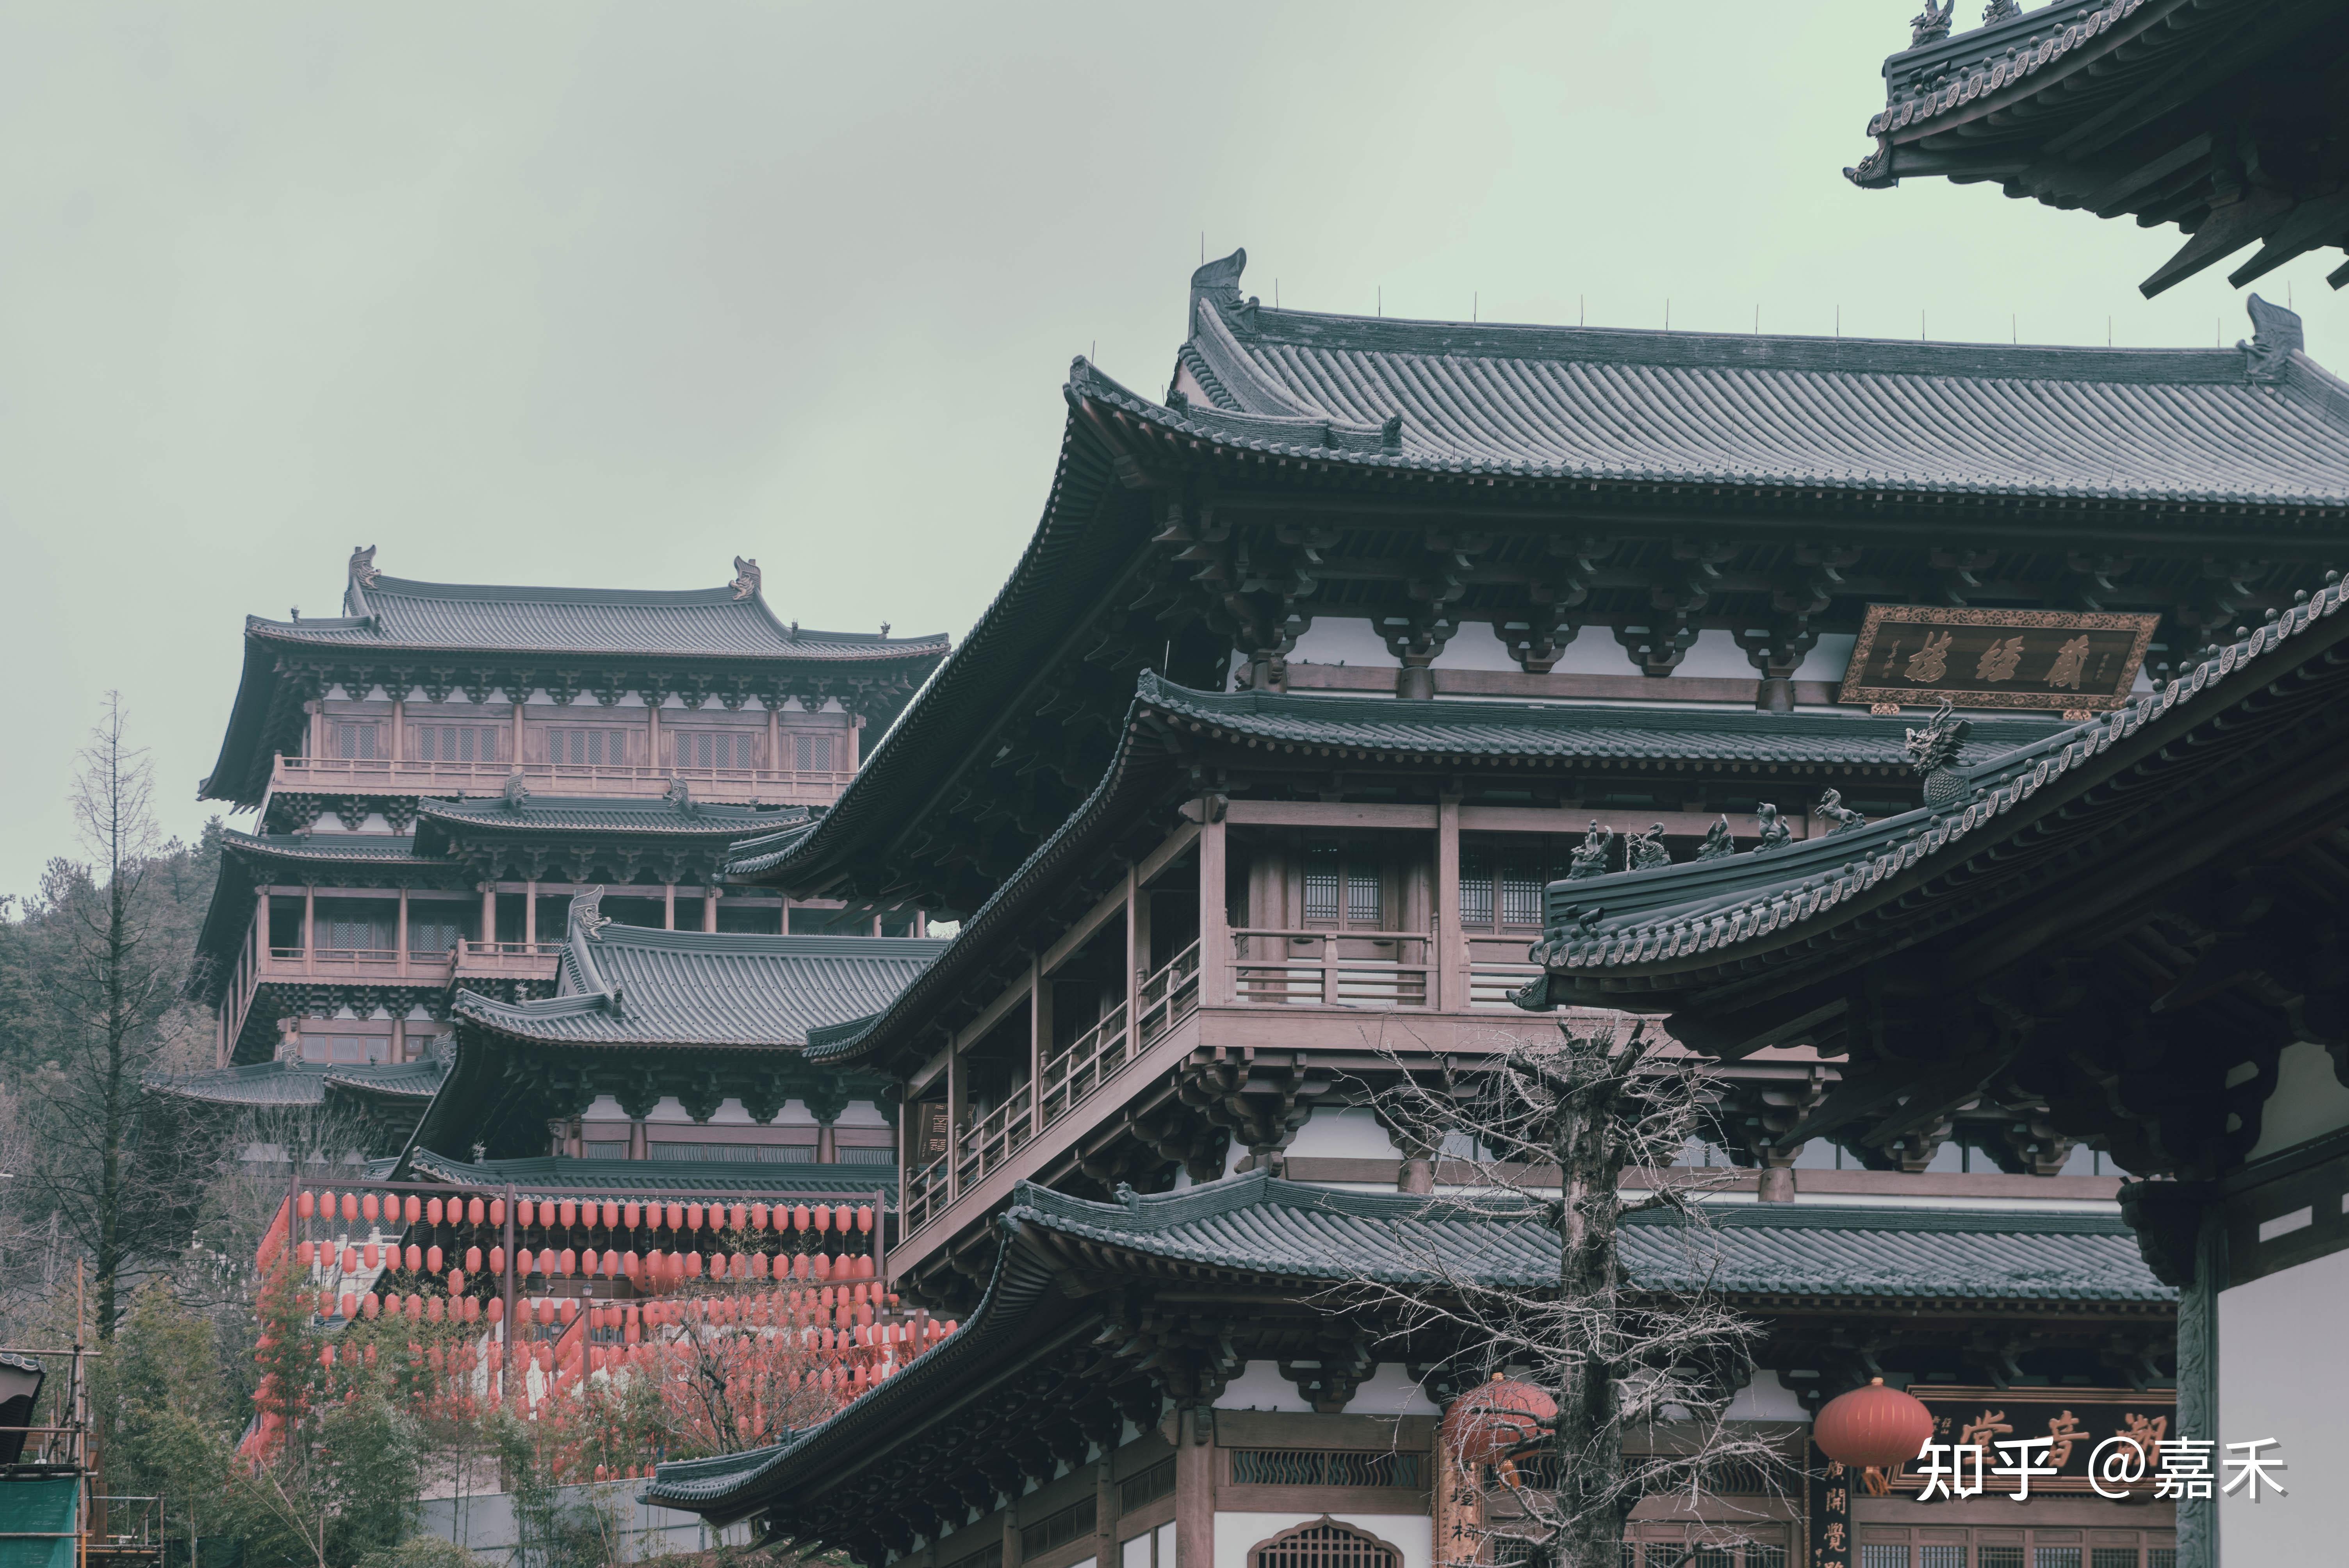 杭州的径山寺新建的古建筑到底是仿日本还是仿宋朝建筑?